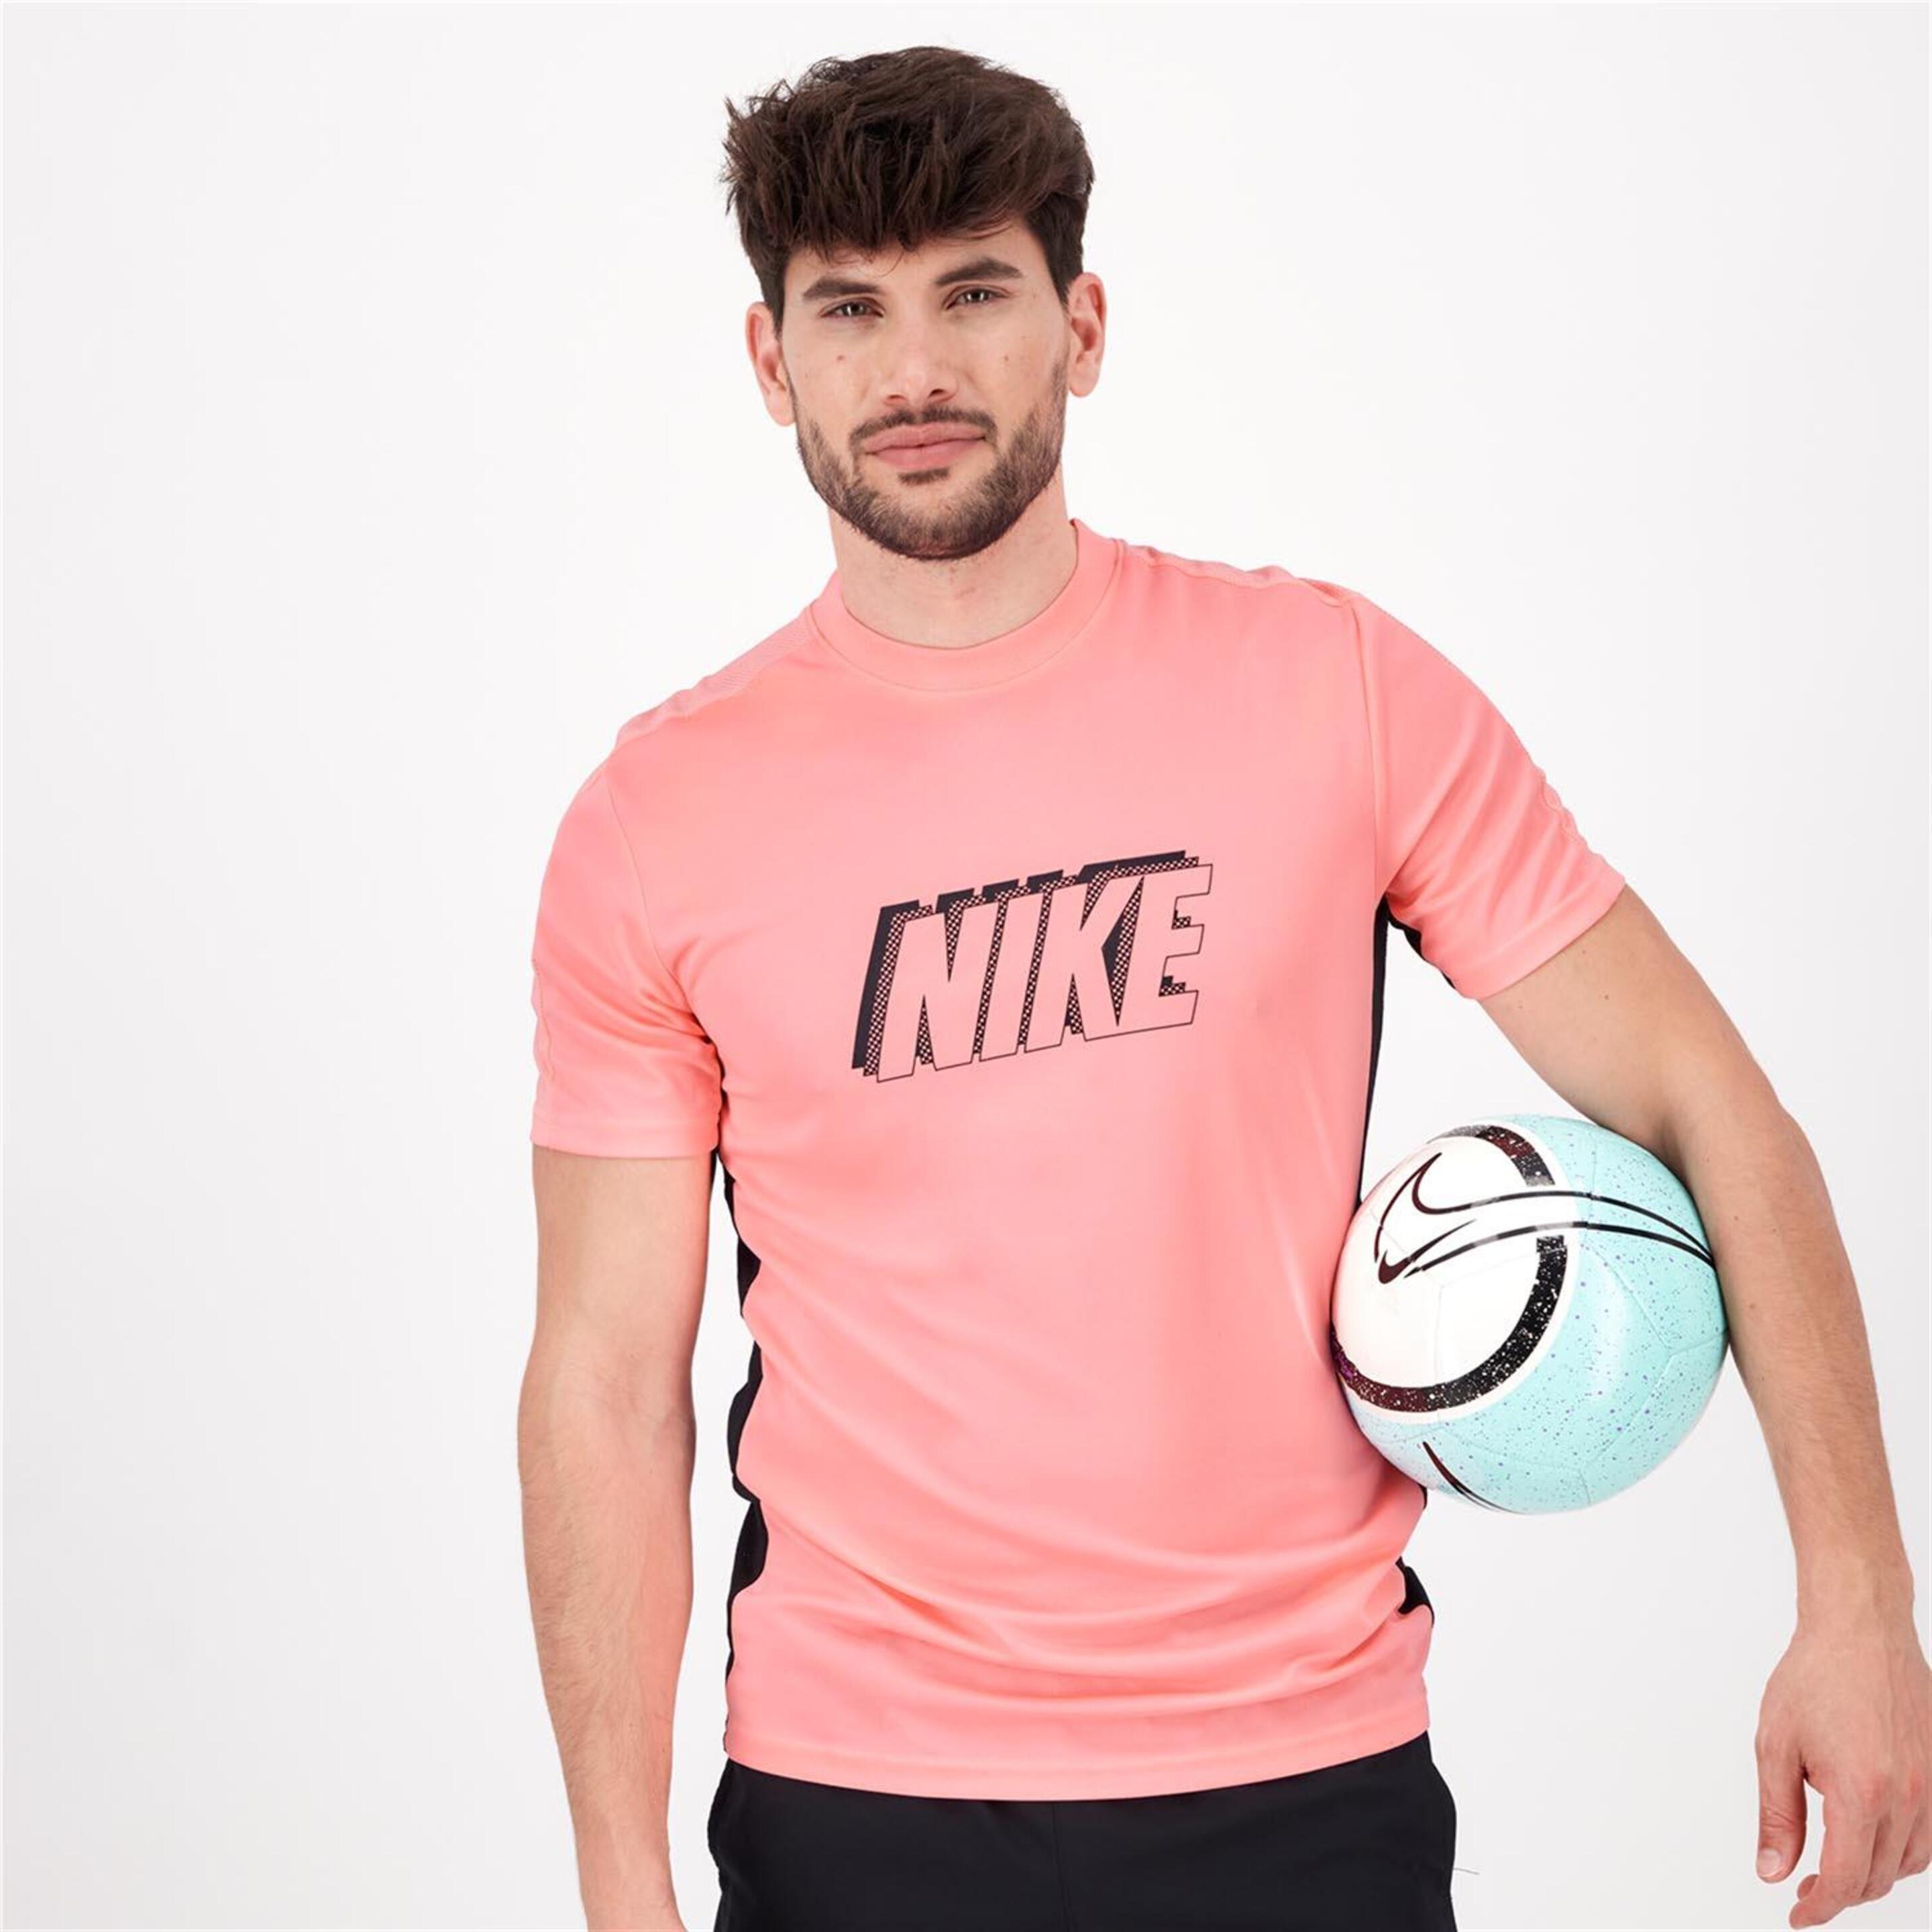 T-shirt Nike - rosa - T-shirt Homem